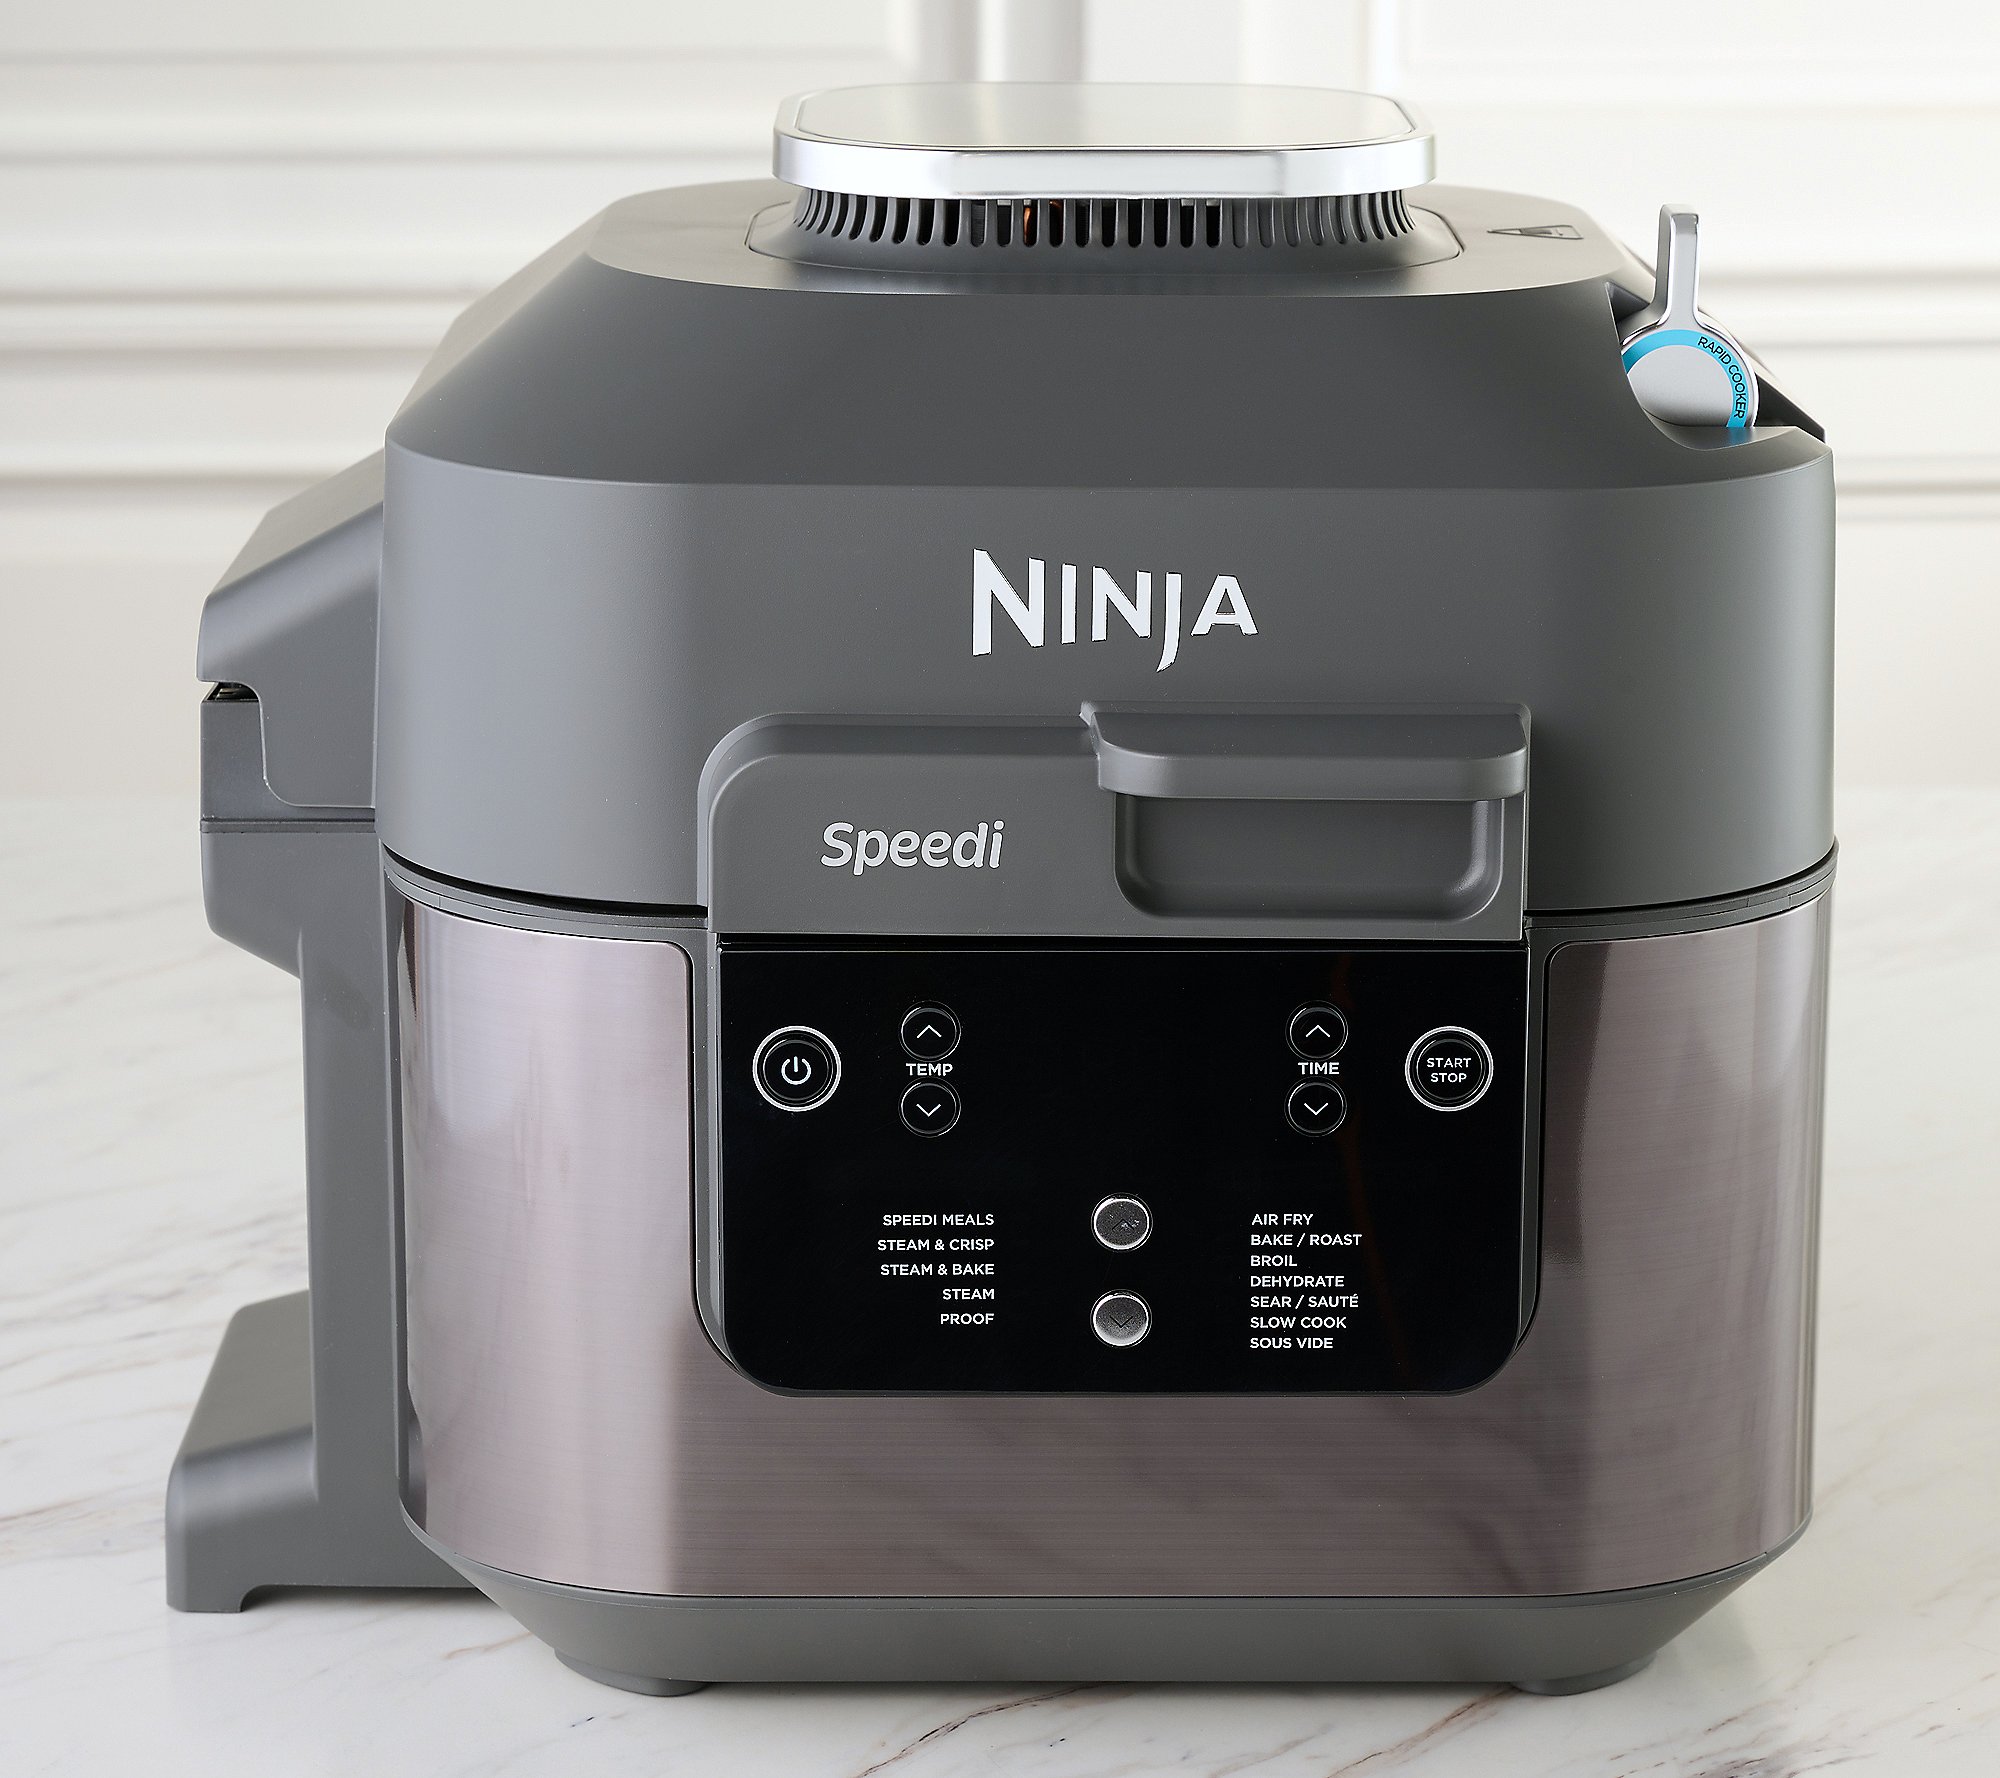 Solved: Ninja Speedi Rapid Cooker- Today's Big Deal - Blogs & Forums